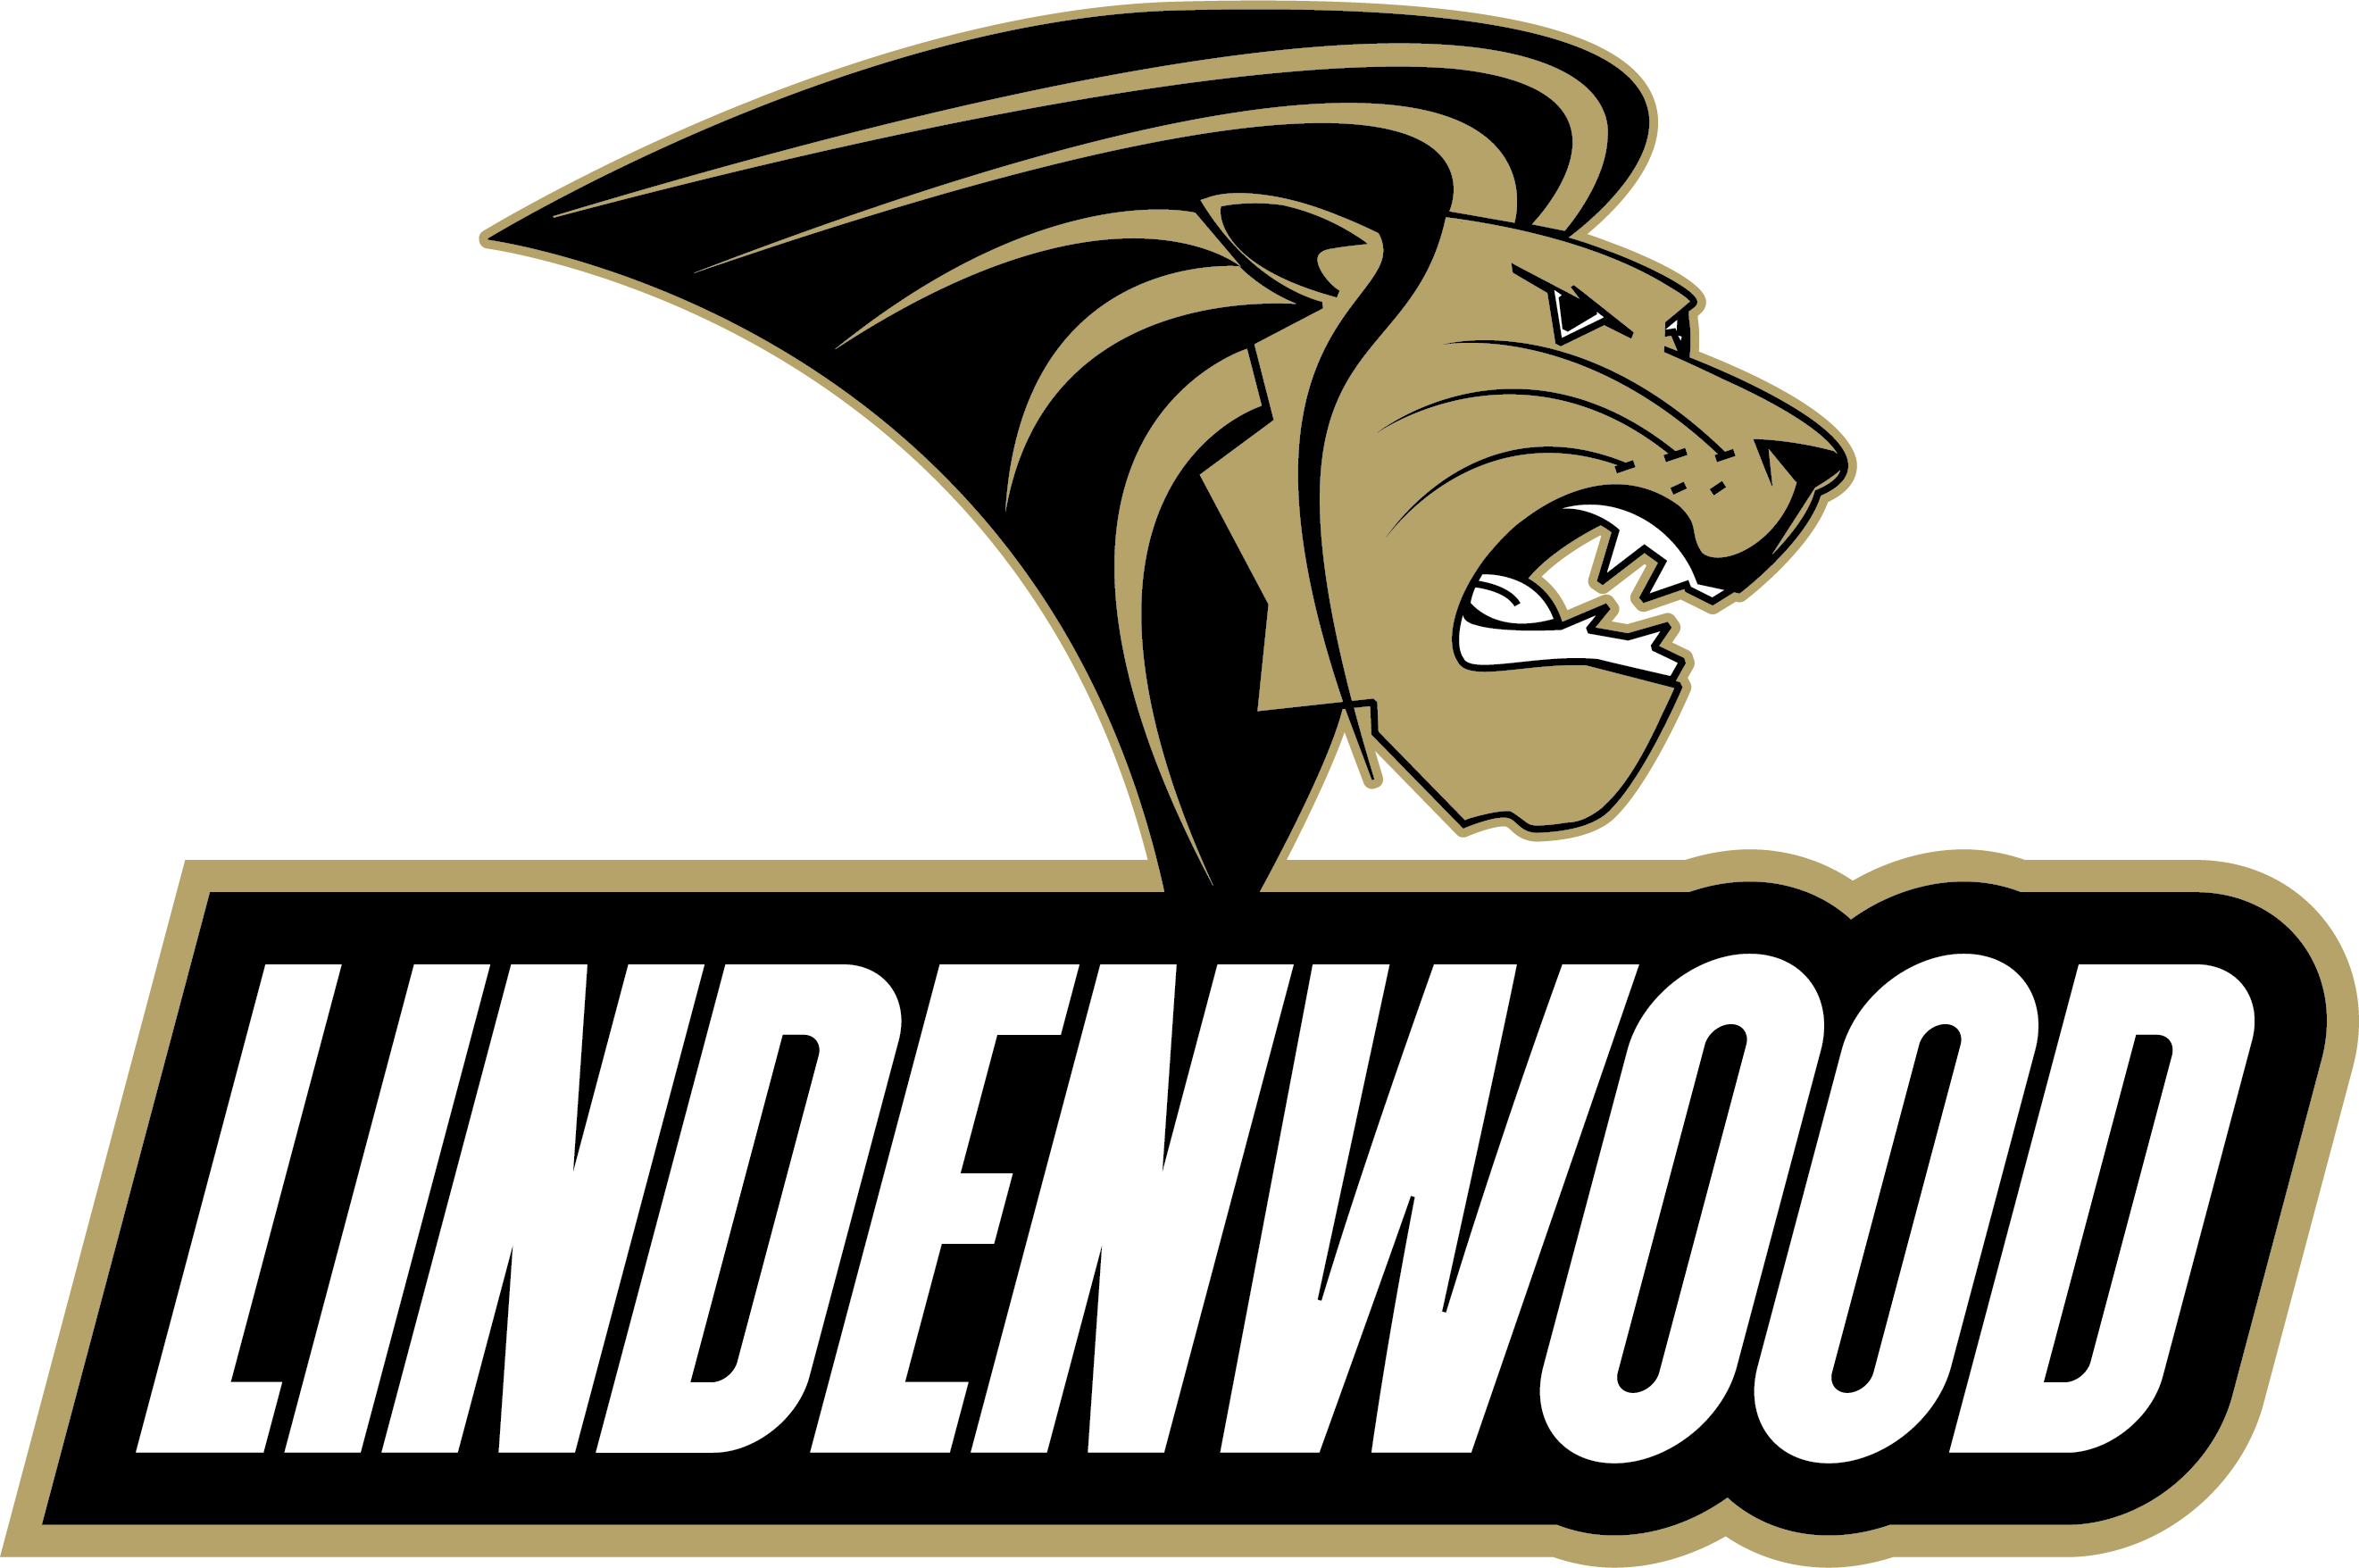 Lindenwood logo